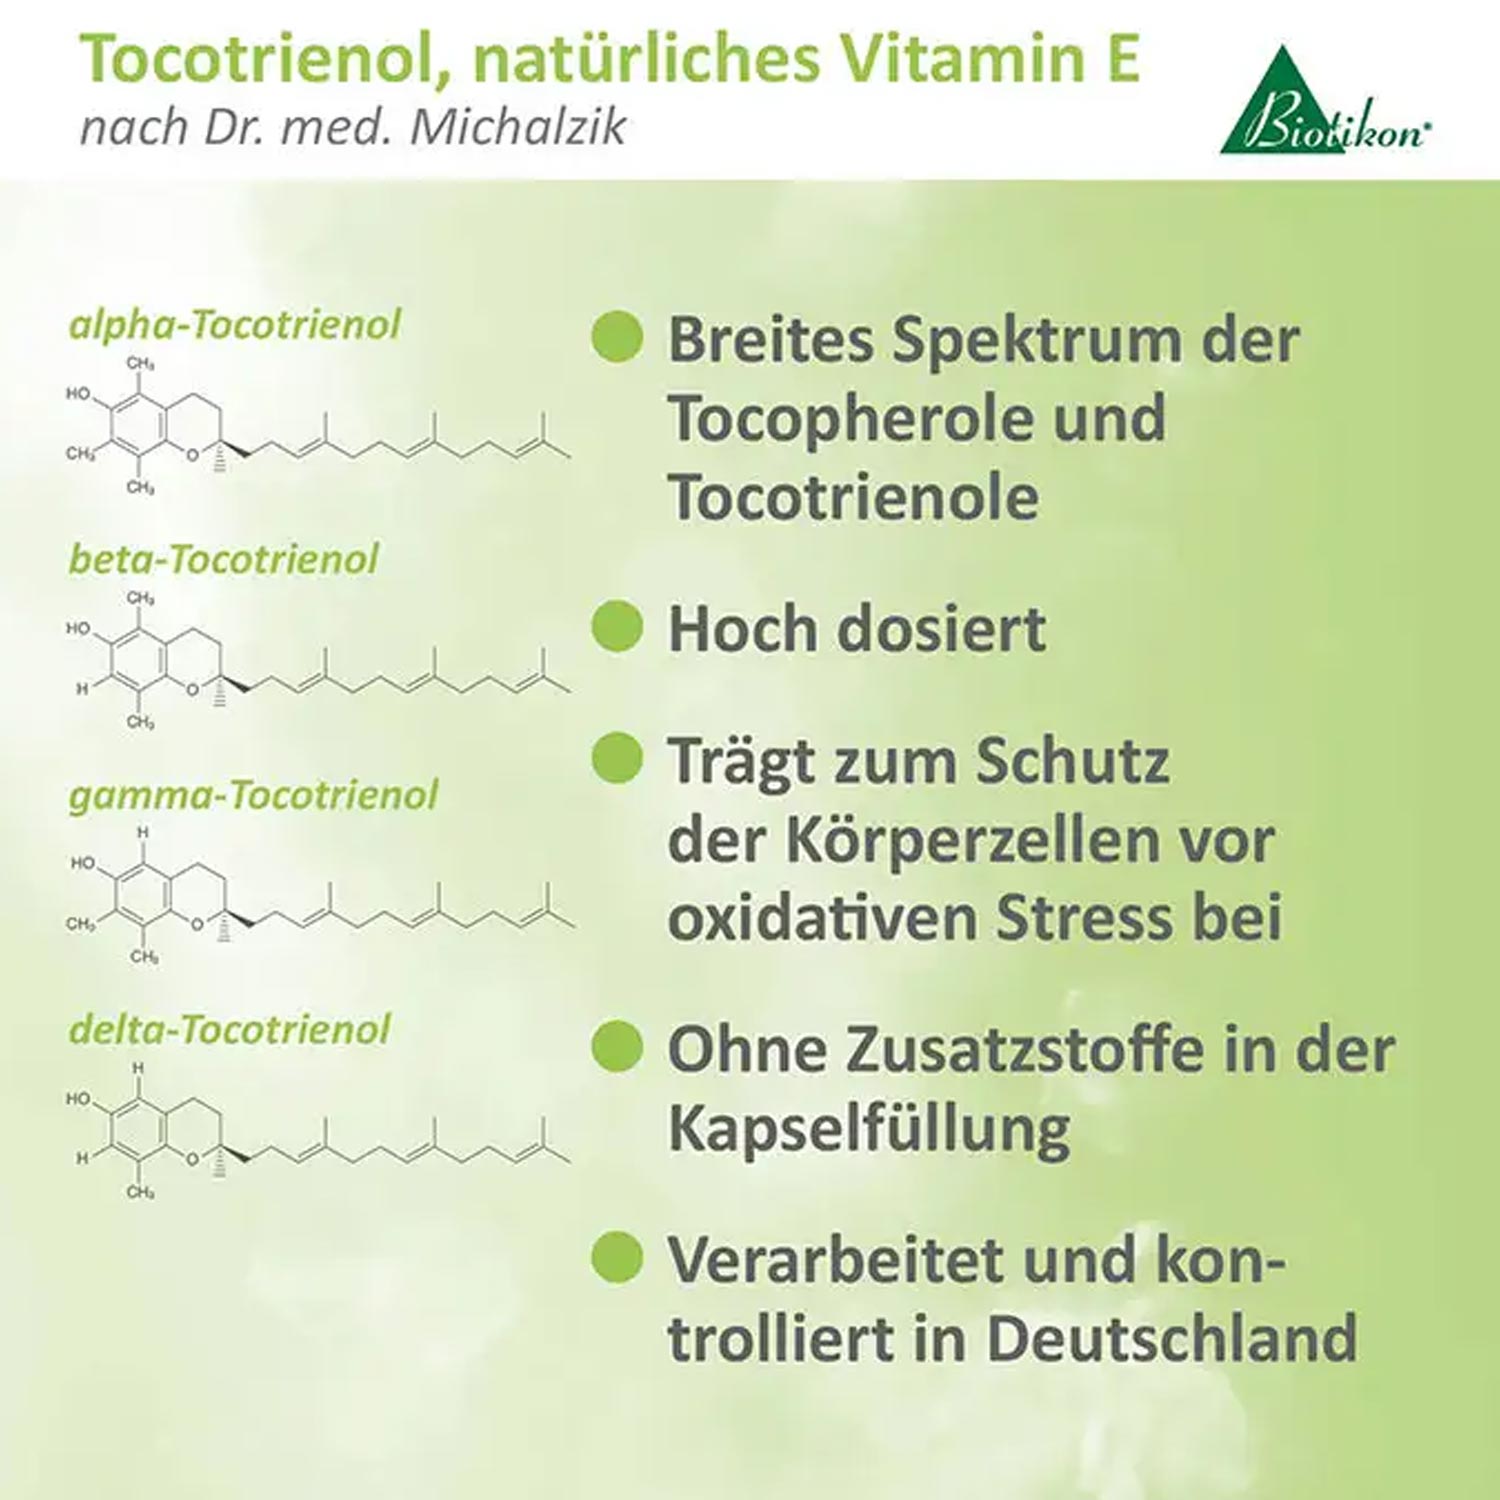 Tocotrienol, nat. Vitamin E von Biotikon - Produktvorteile